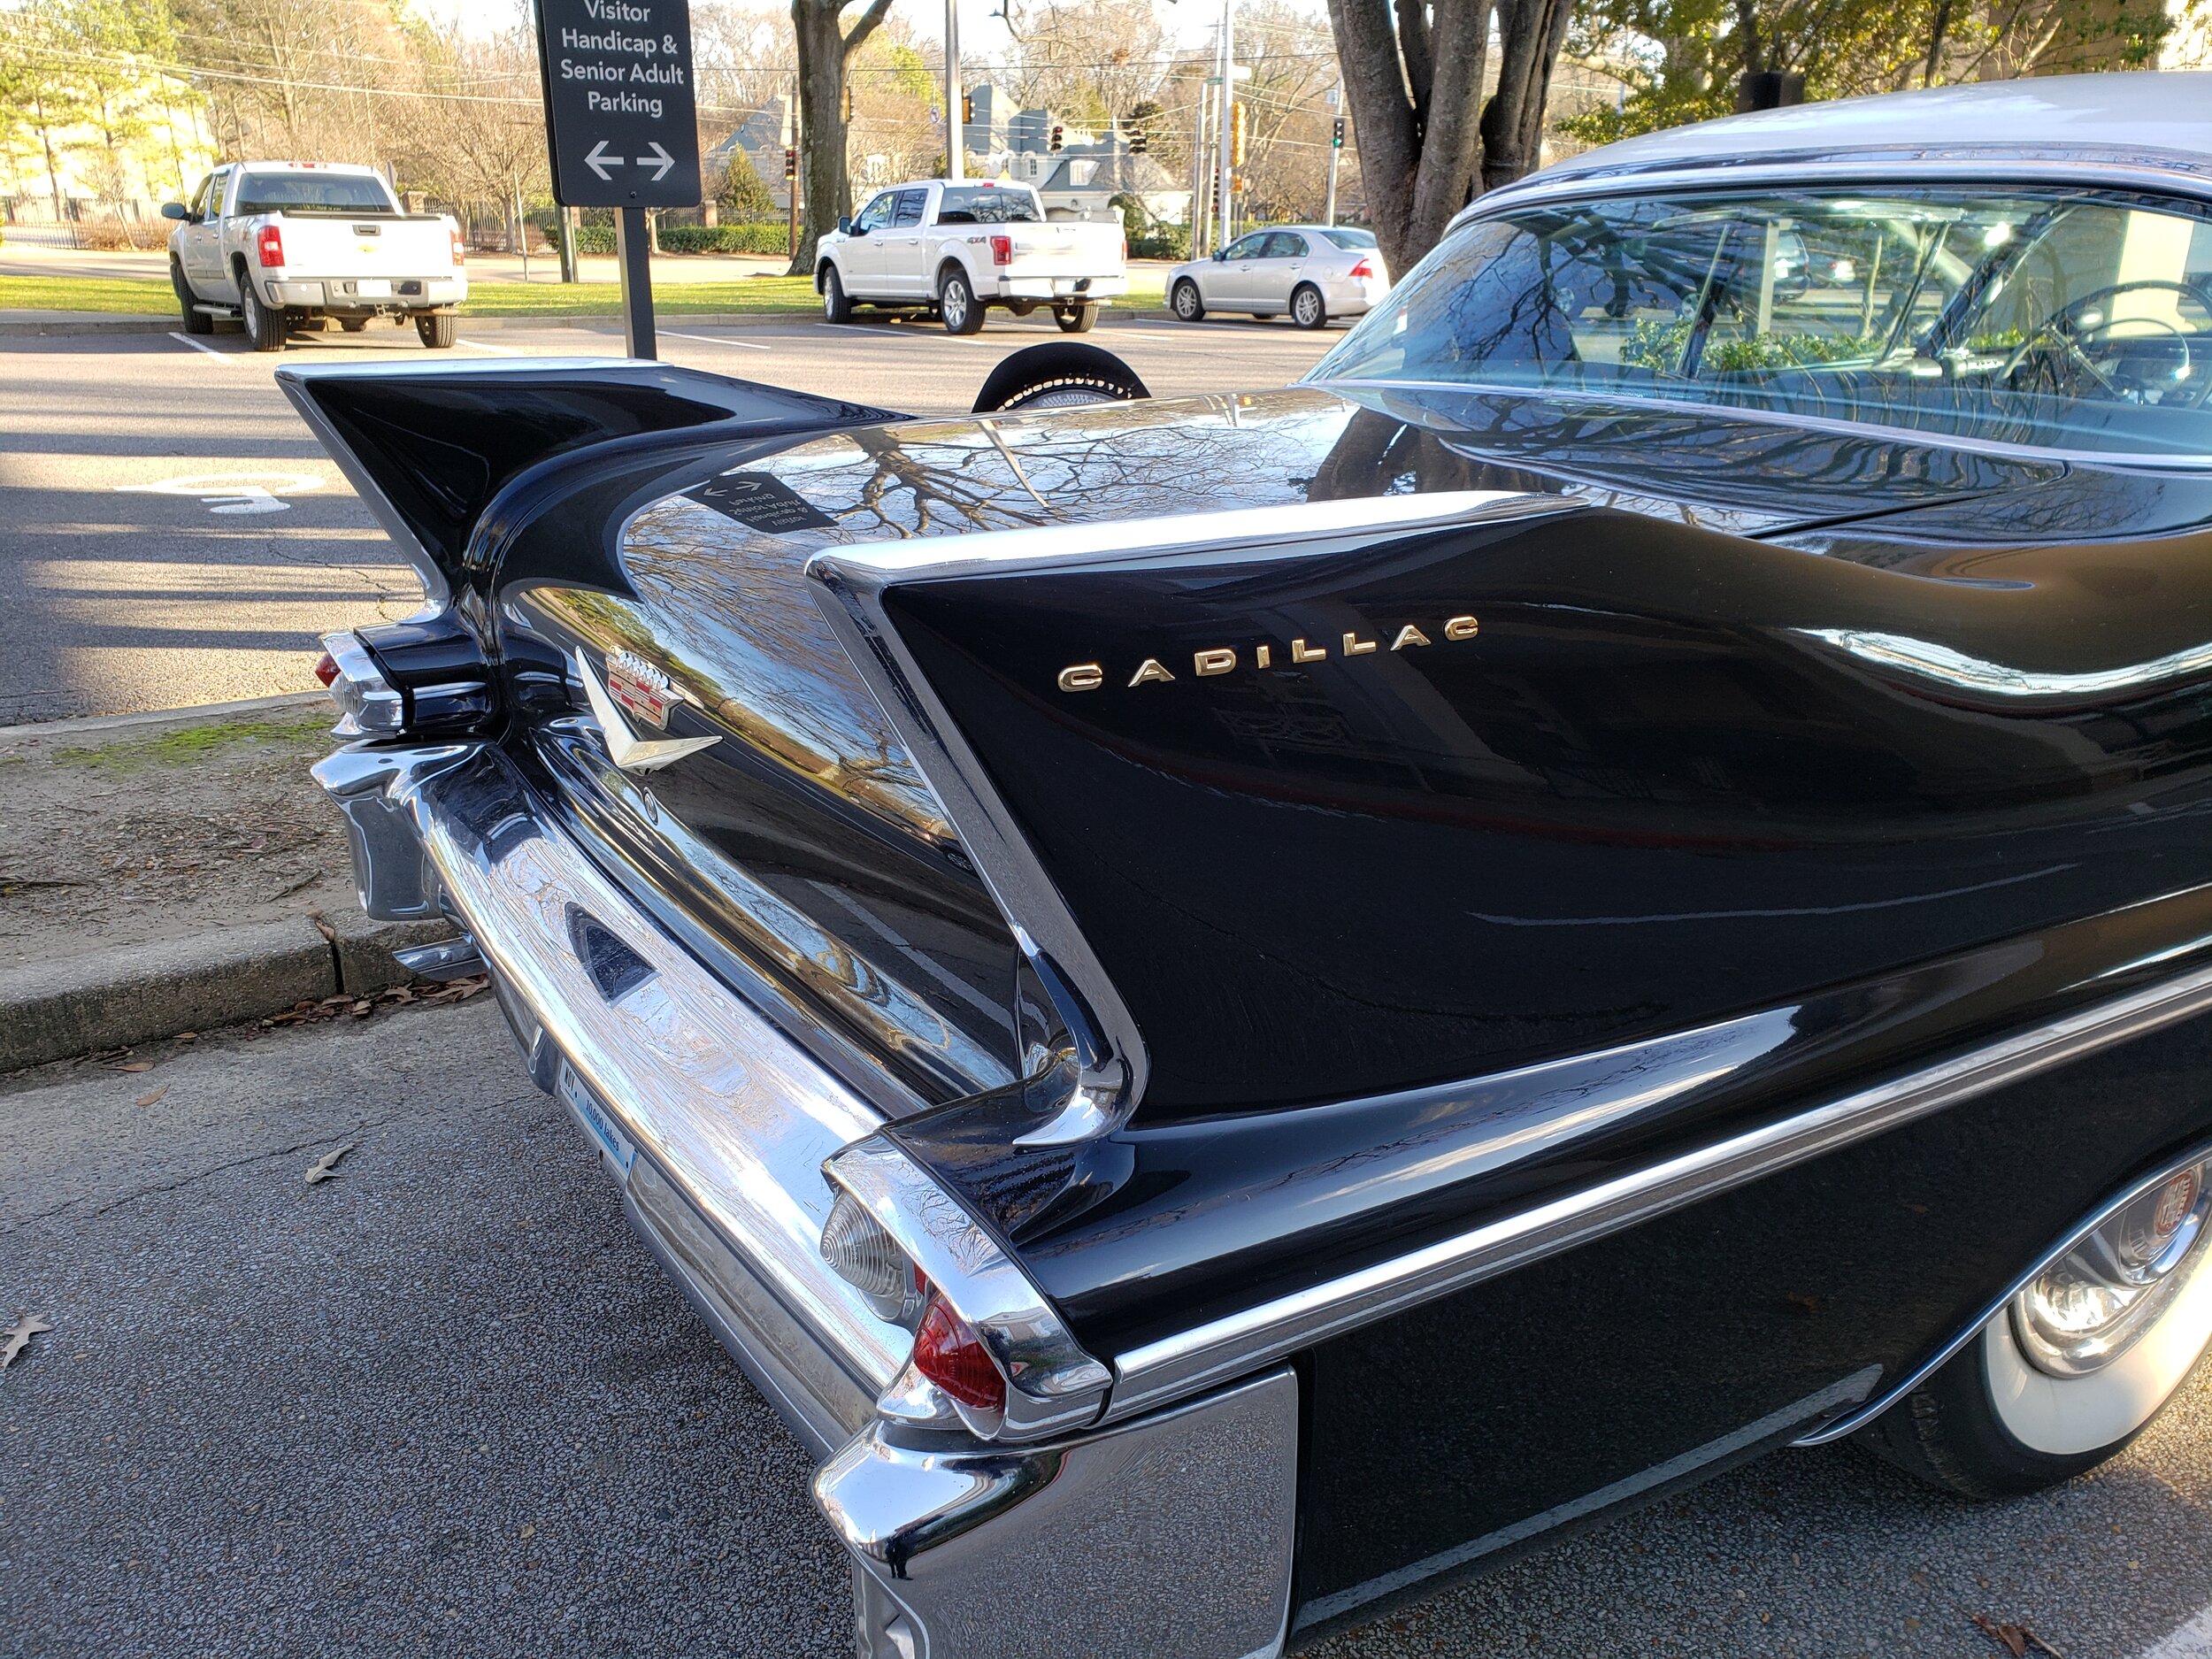 Cadillac getaway wedding car.jpg